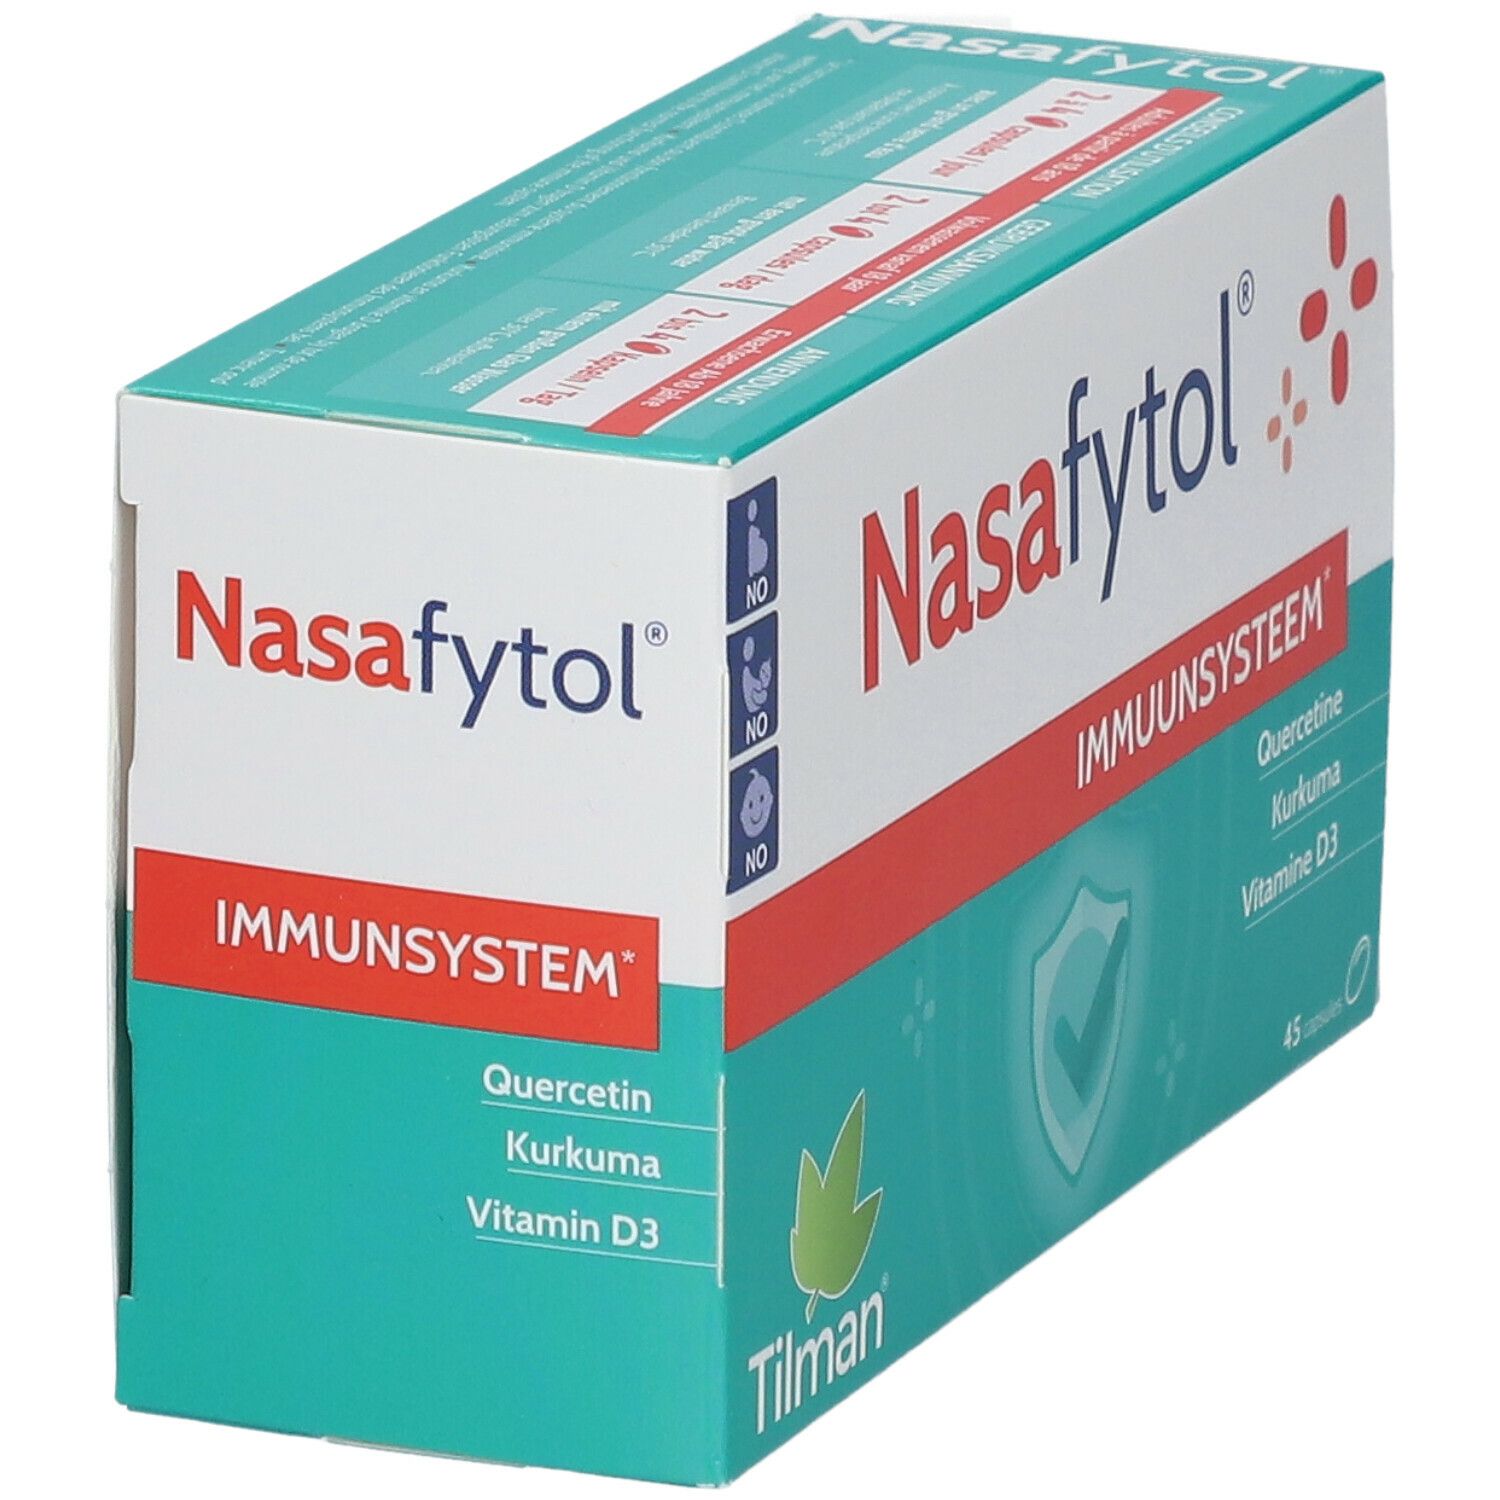 Nasafytol®